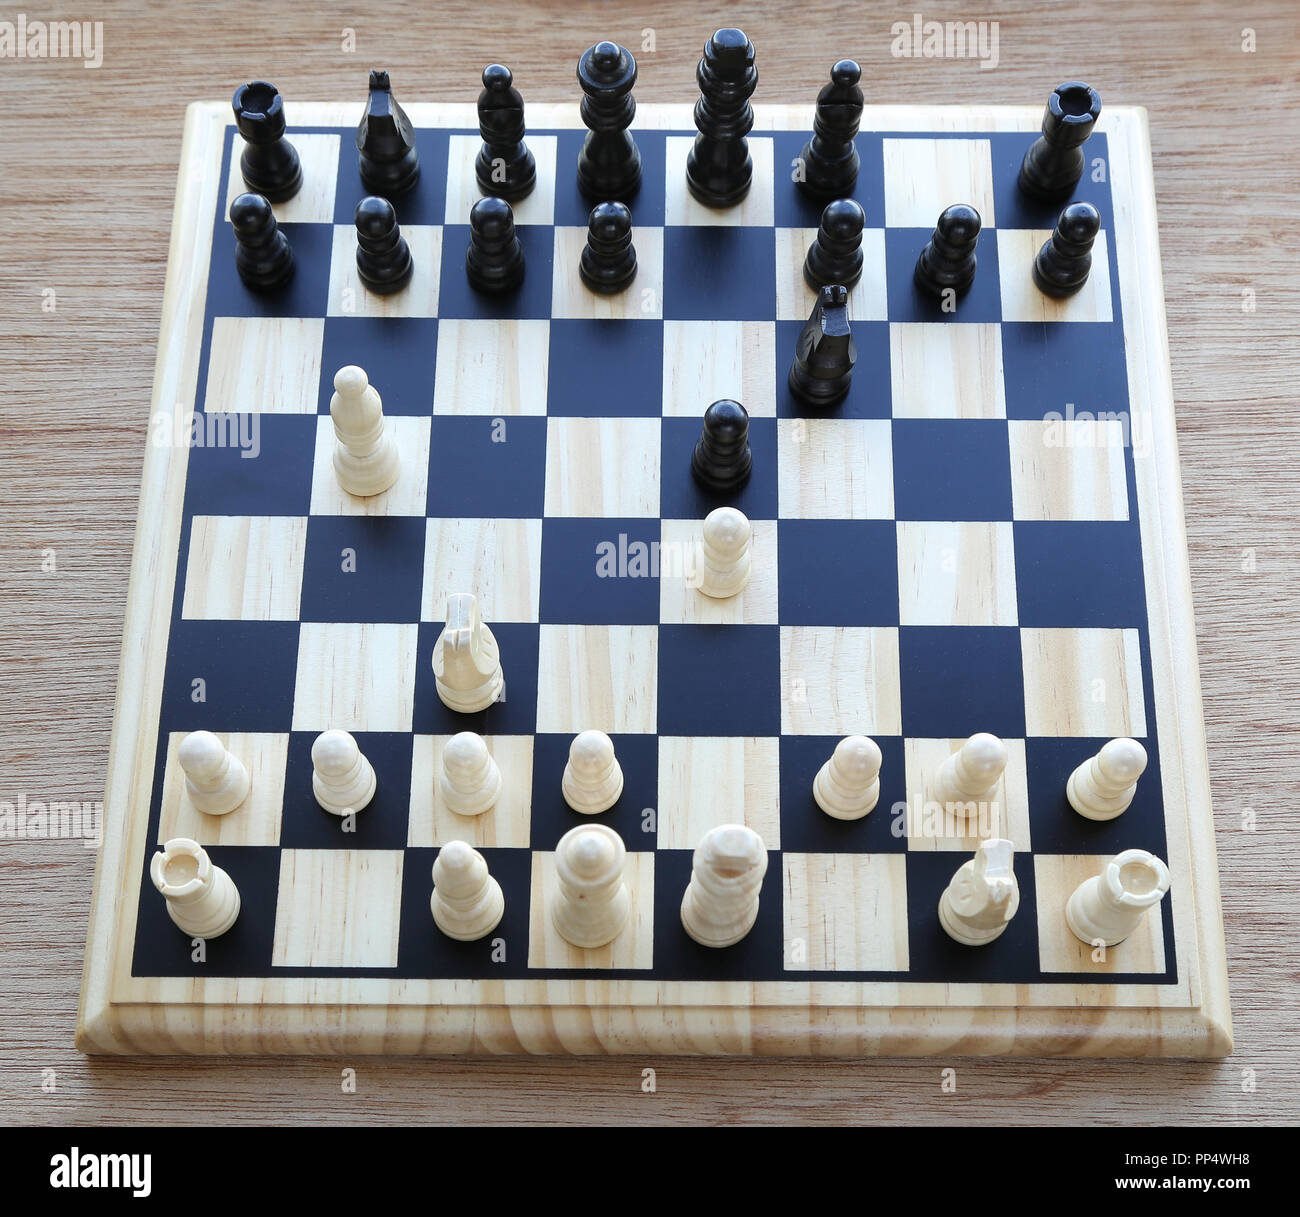 Jouer aux échecs avec différents morceaux de bord Banque D'Images